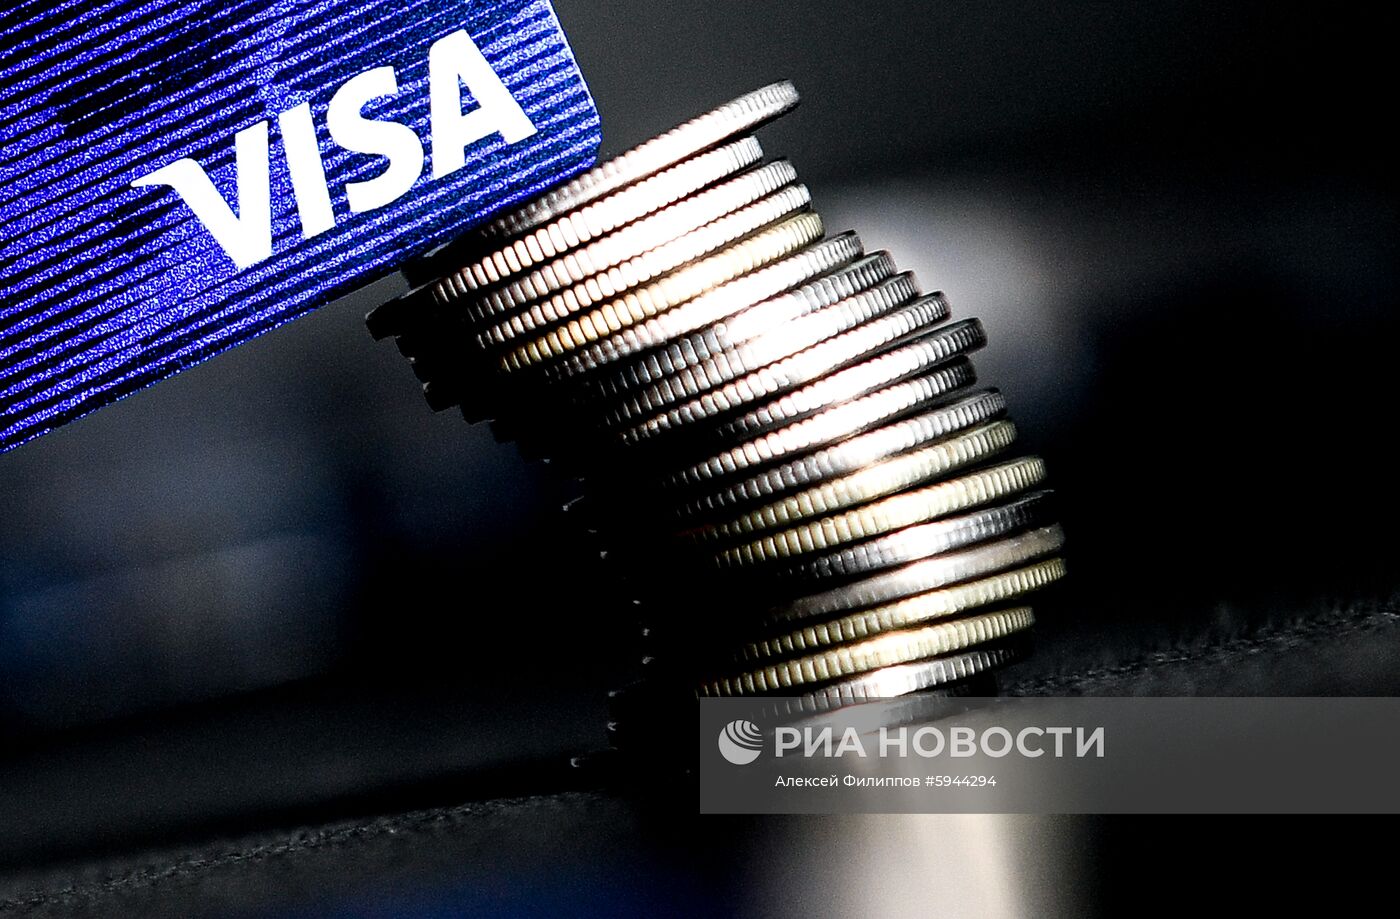 Банковские карты международных платежных систем VISA и MasterCard 